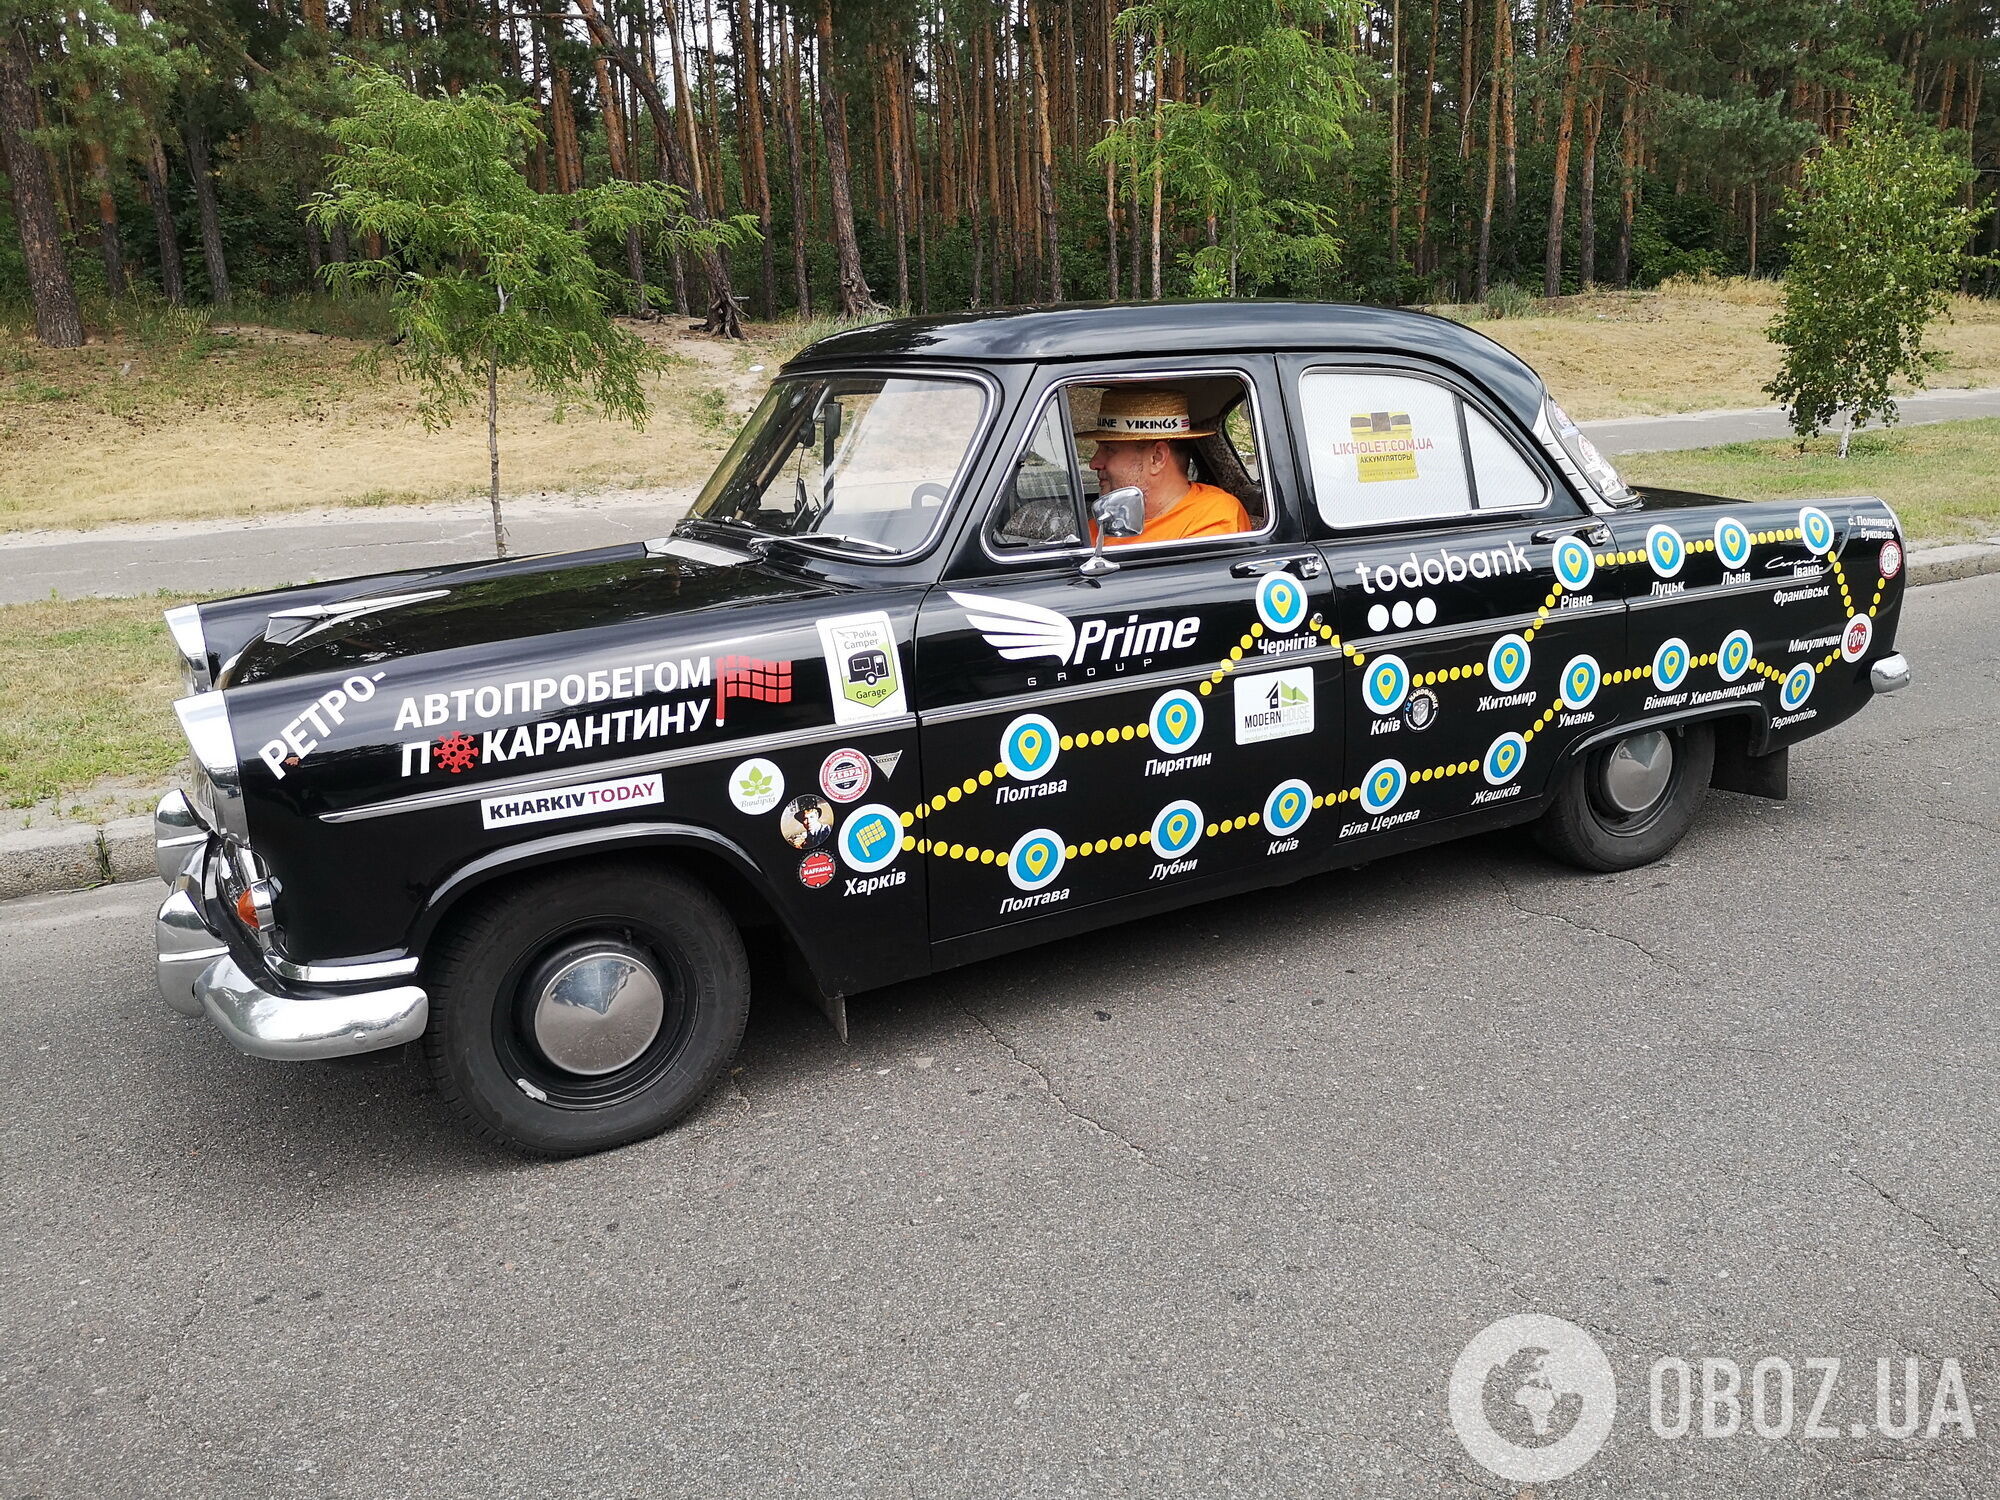 Ford Counsul 1957 знайшли 9 років тому в Луганську